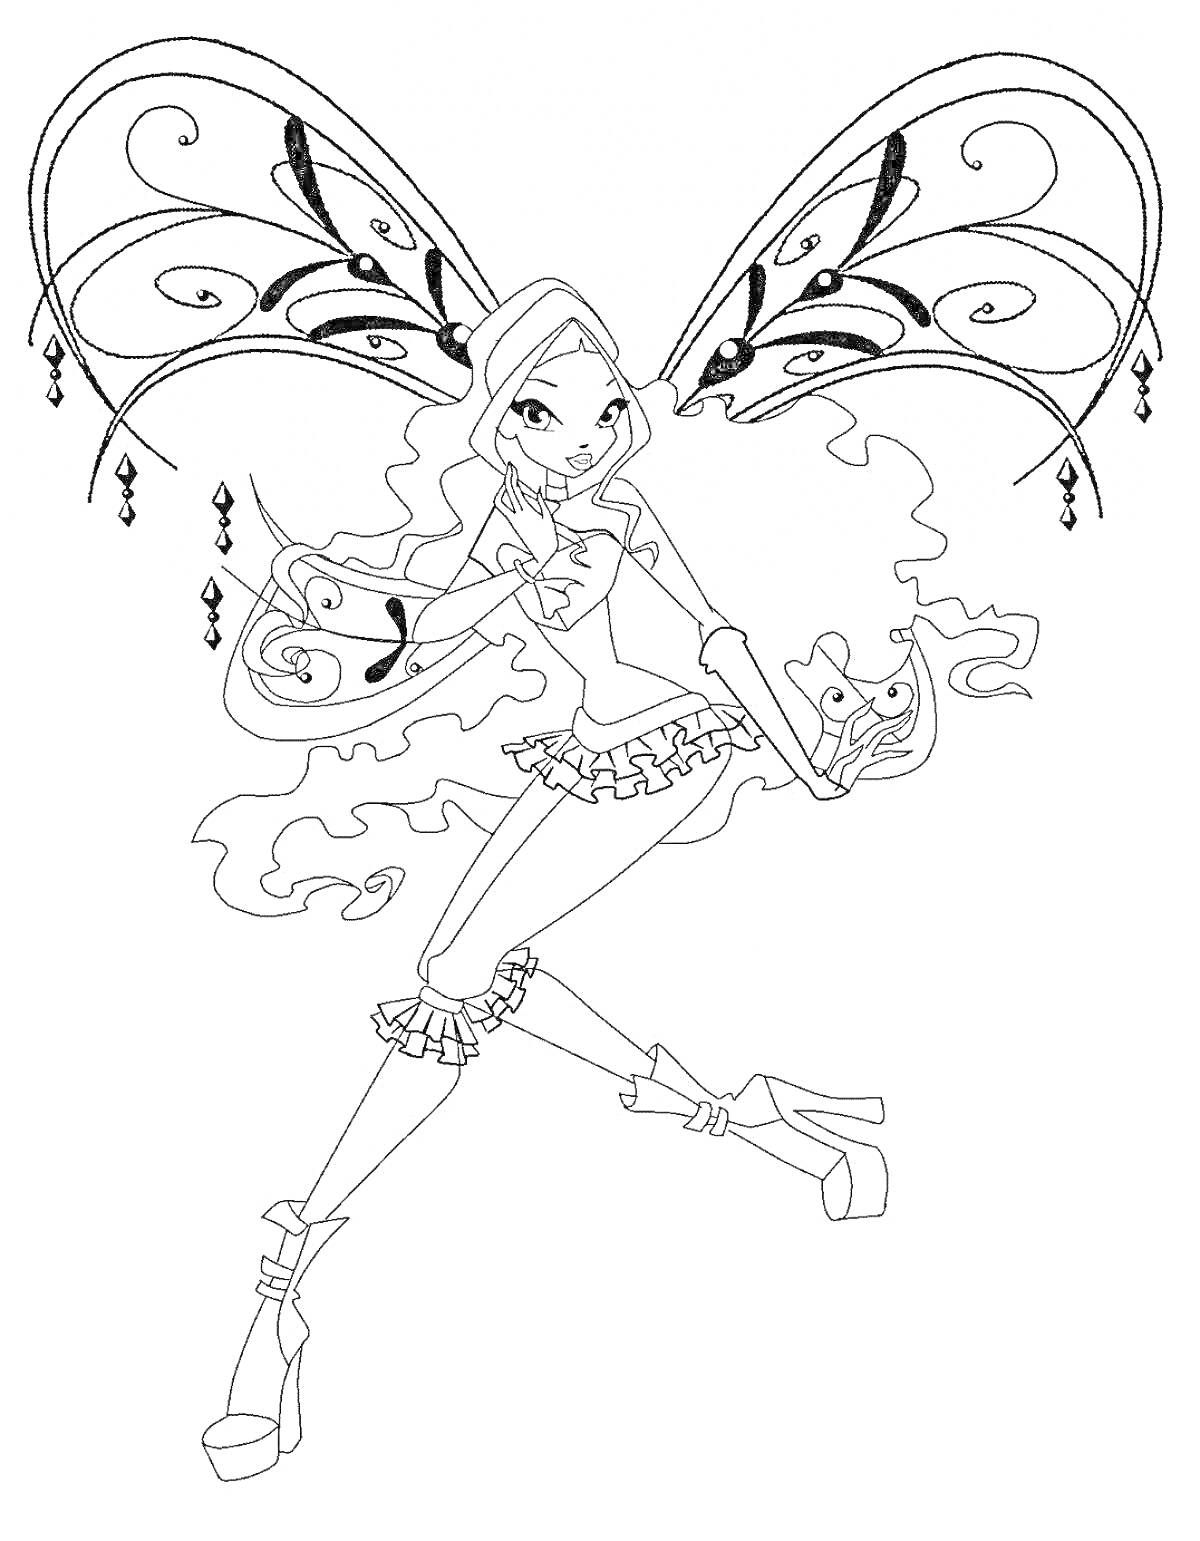 Раскраска Фея с длинными волосами в форме Беливикс, с большими декоративными крыльями и магическим шаром в руке